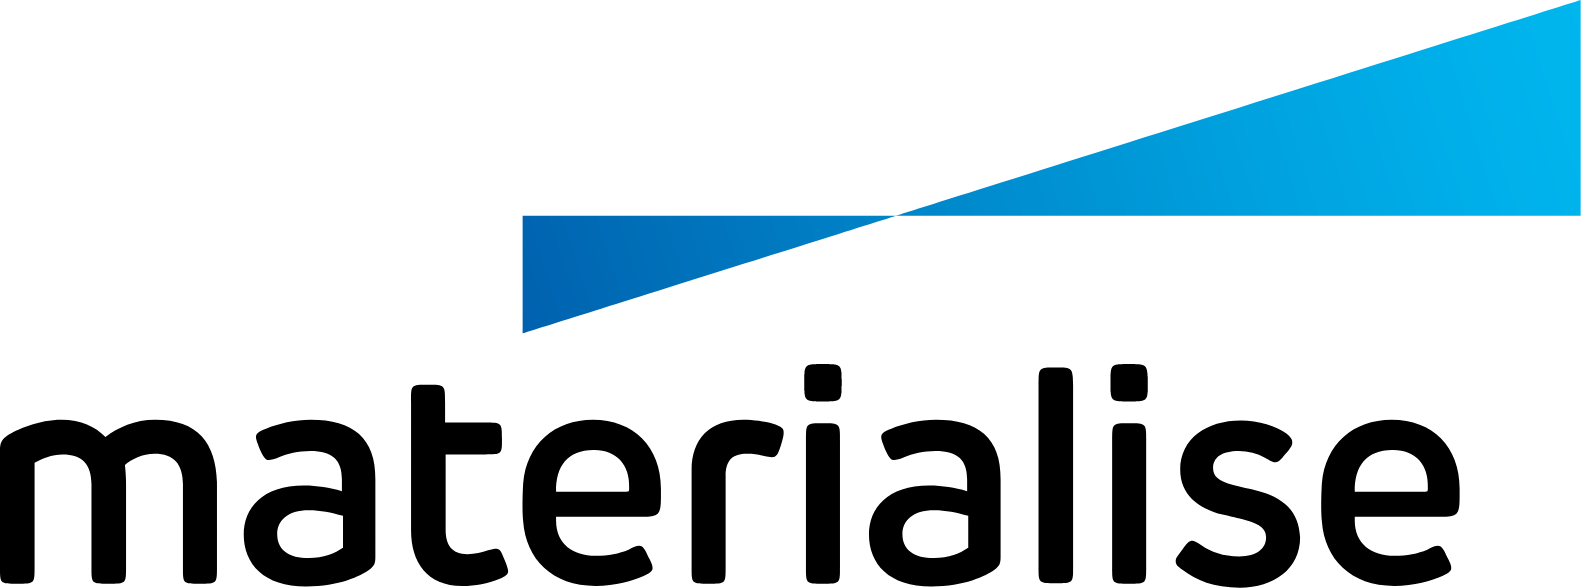 Materialise NV logo large (transparent PNG)